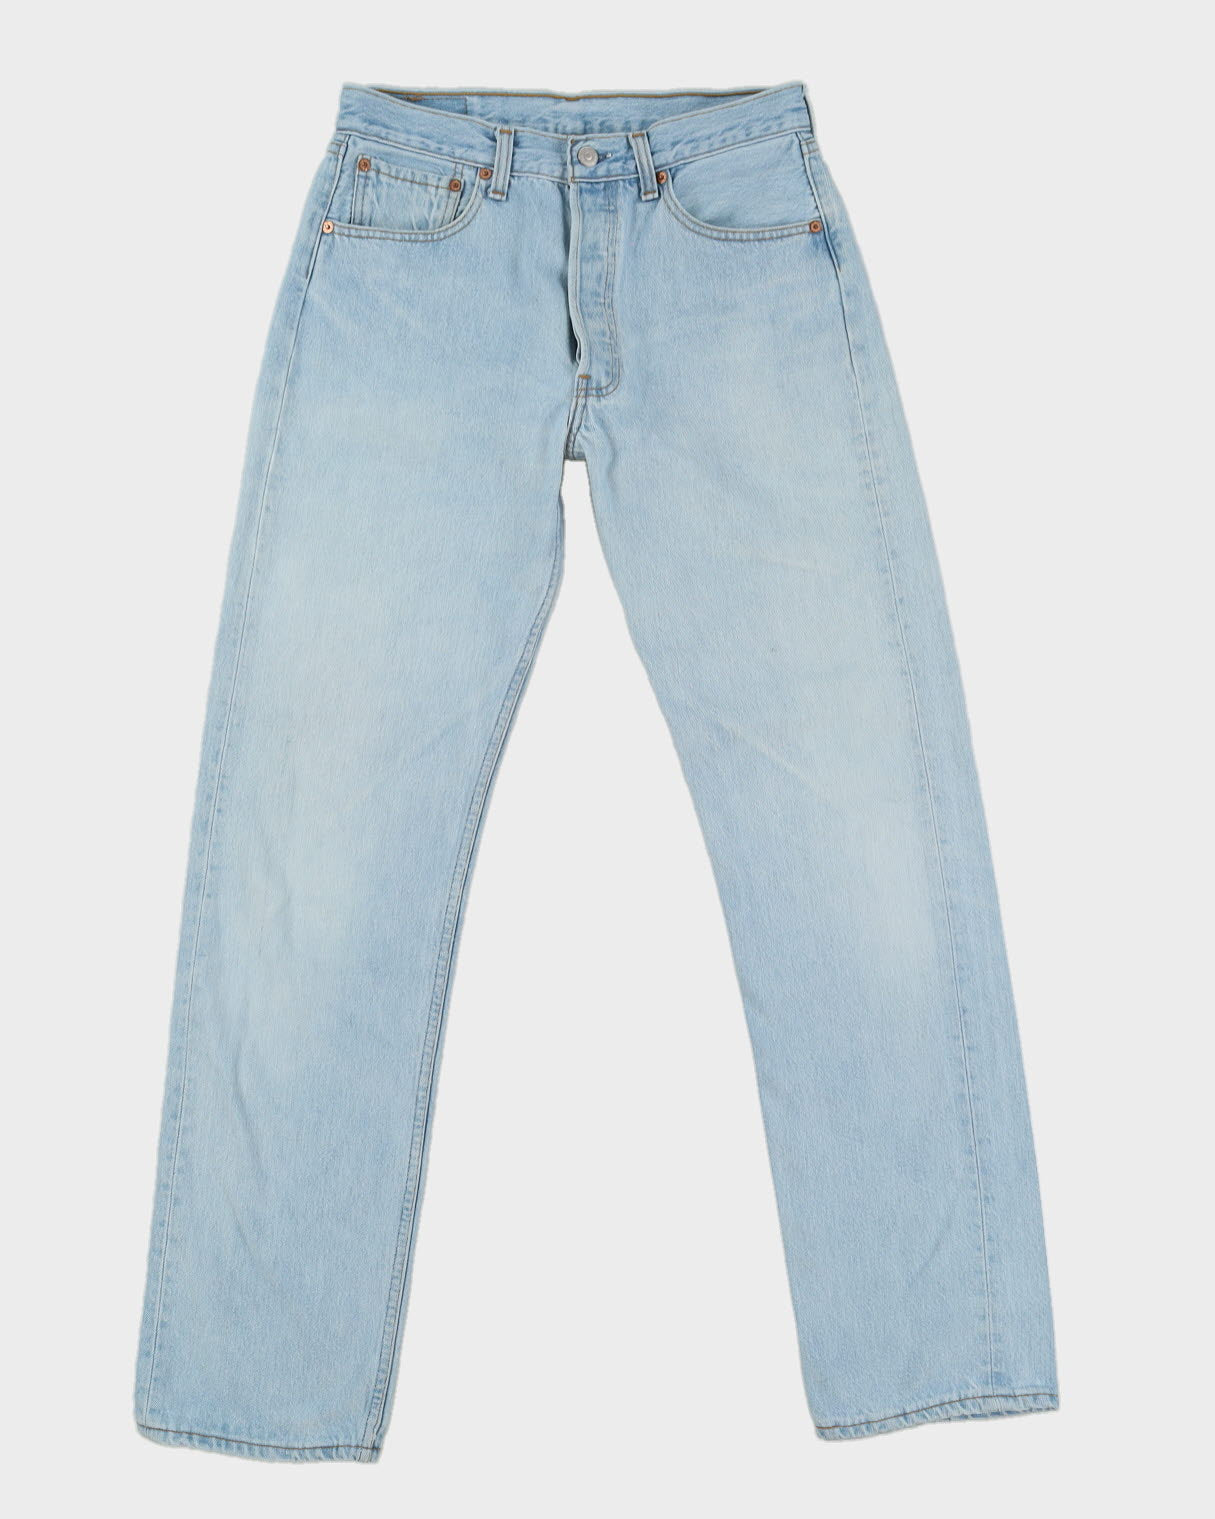 Vintage 80s  Levi's 501 Blue Jeans - W30 L33